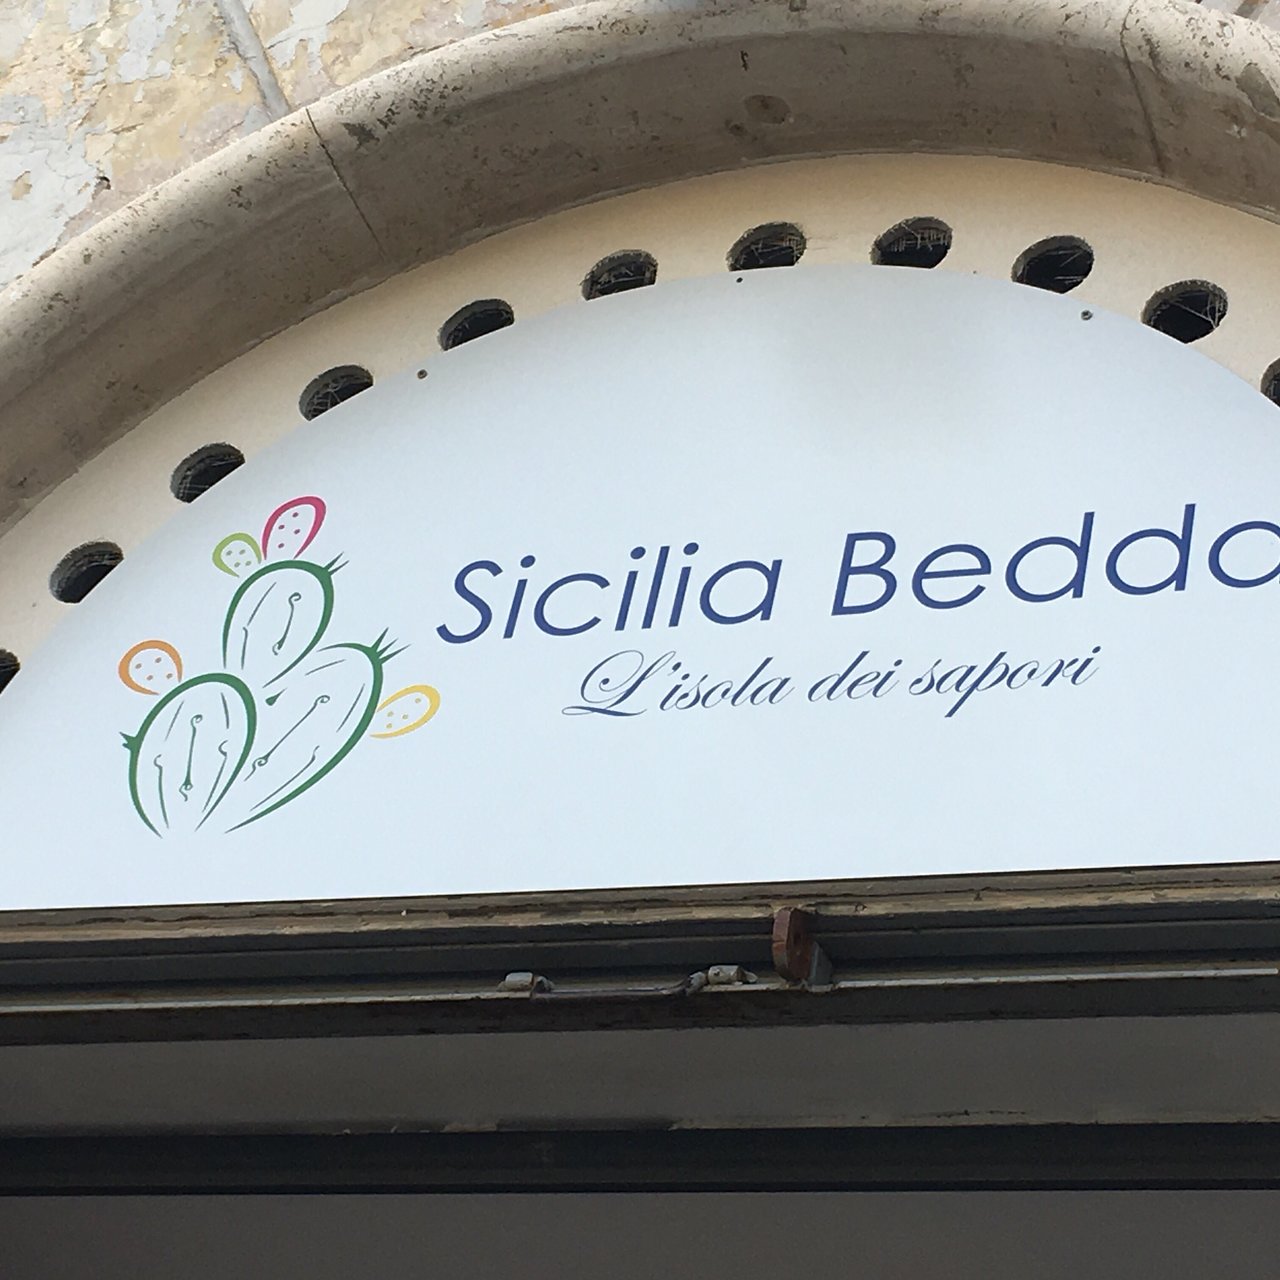 Sicilia Bedda, Tivoli